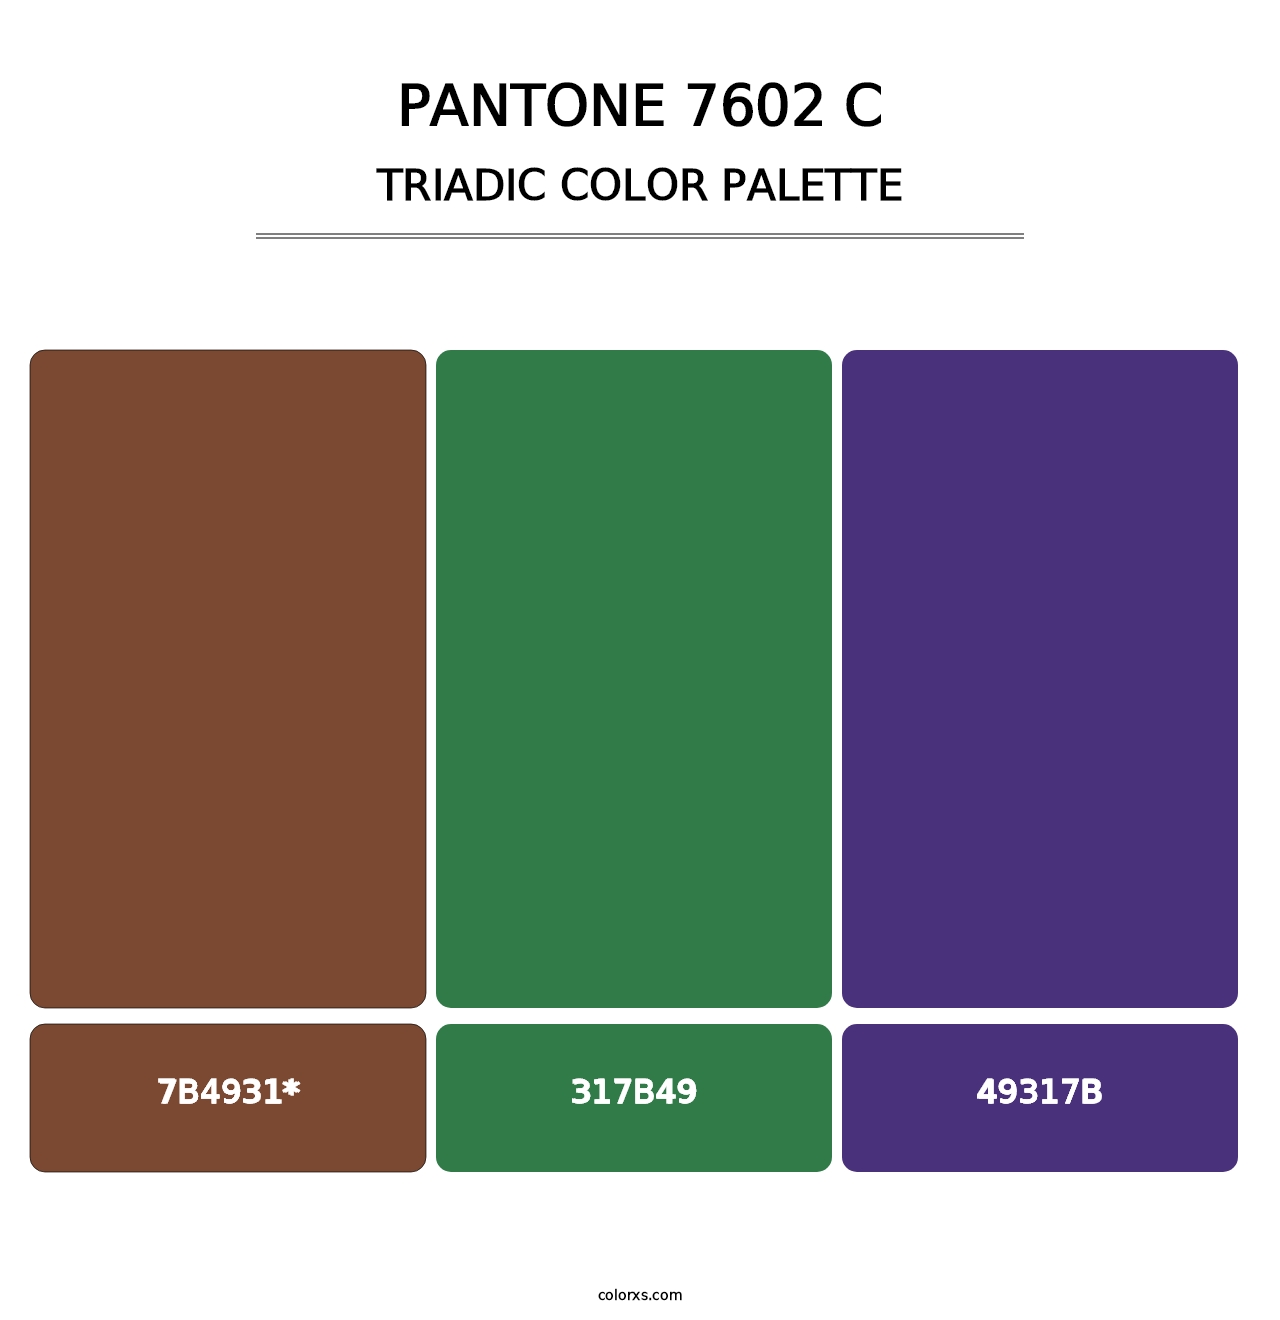 PANTONE 7602 C - Triadic Color Palette